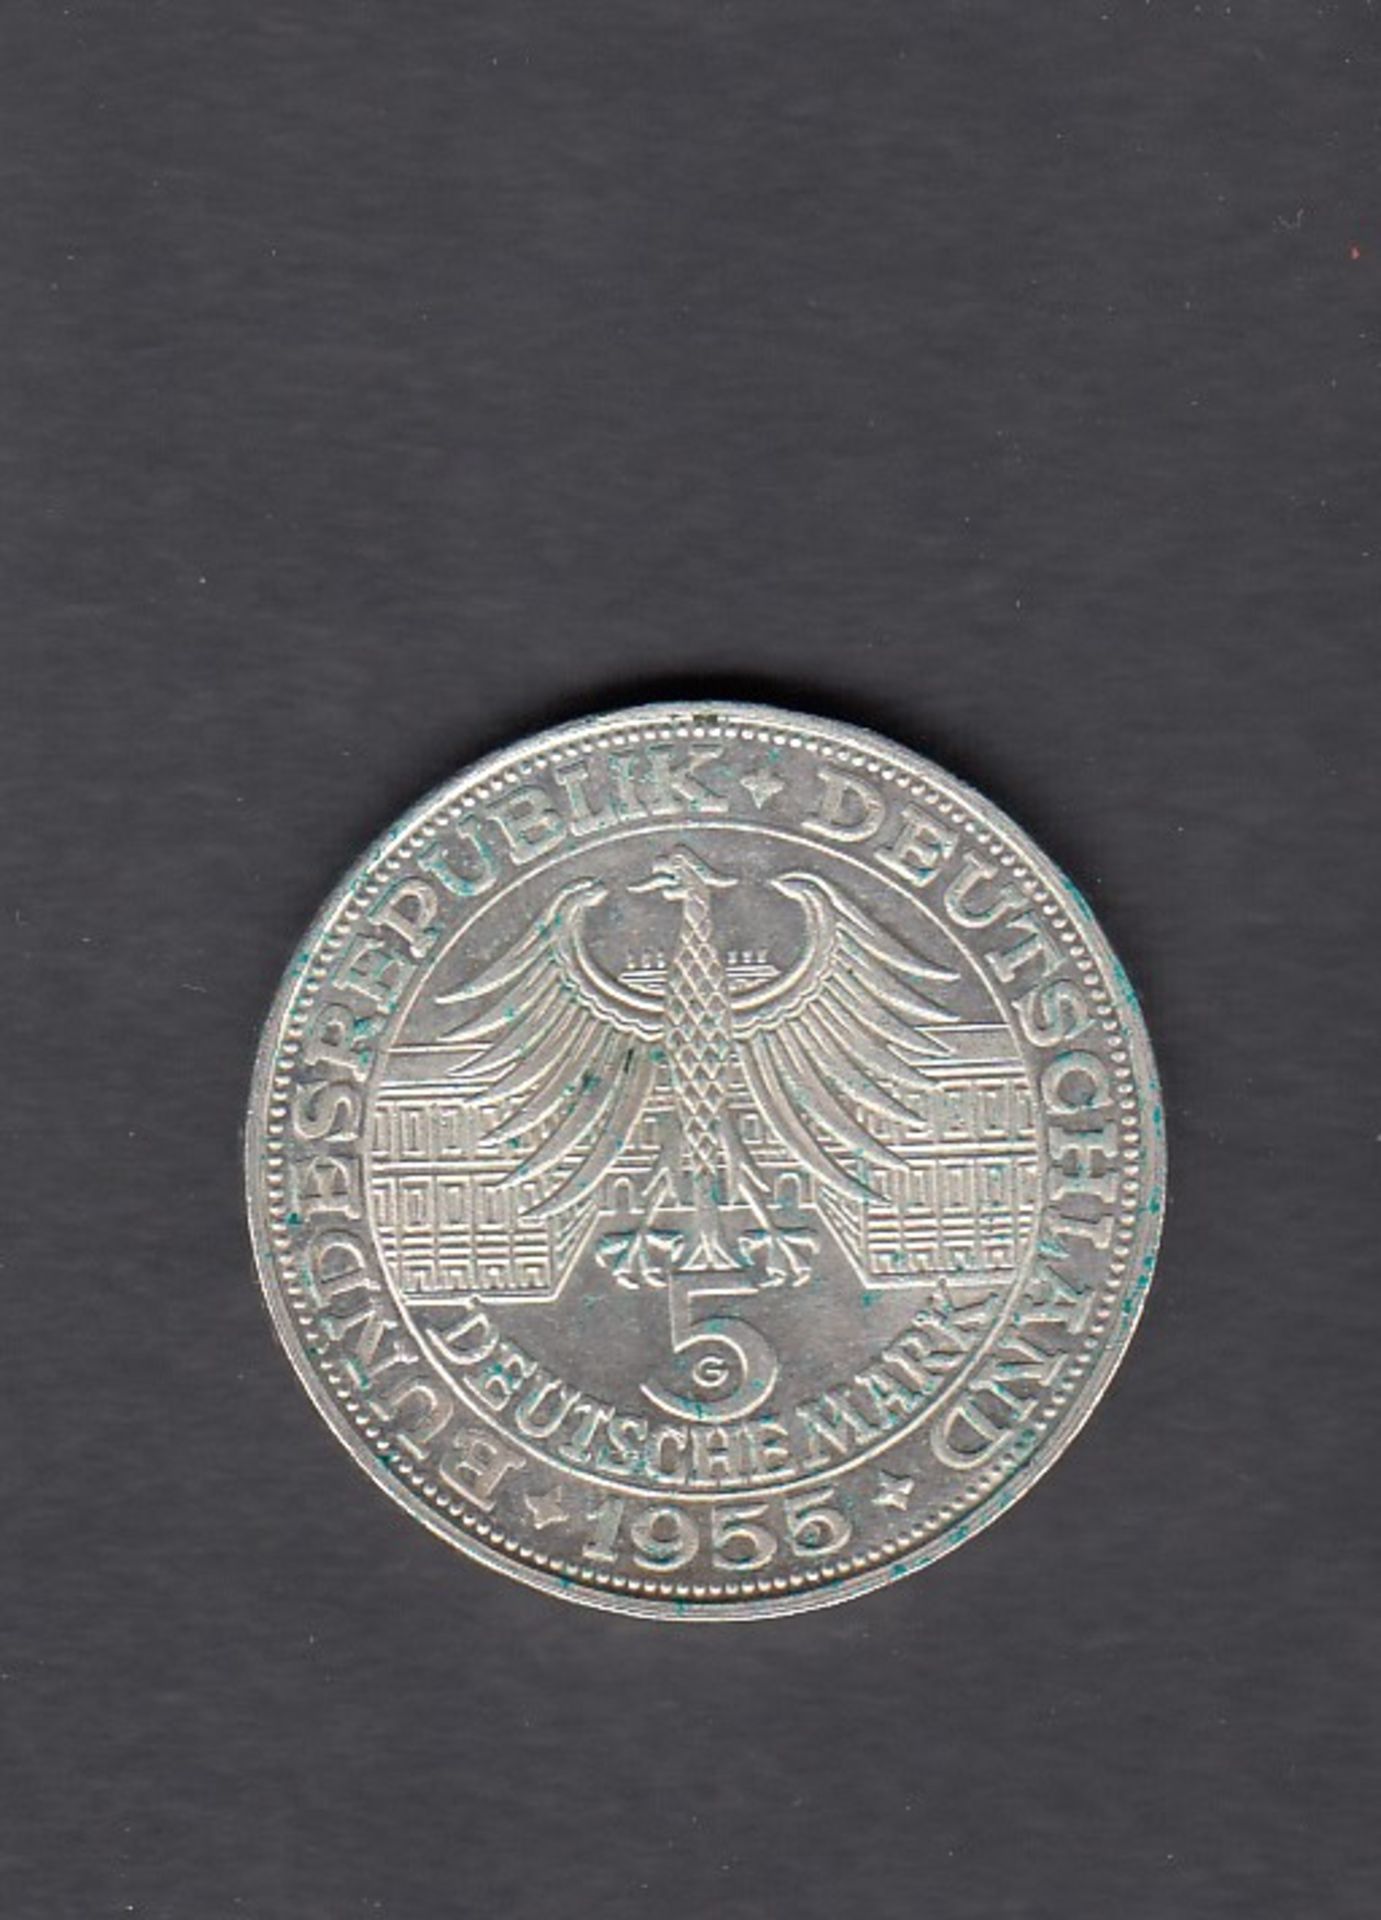 5 DM Markgraf von Baden, 1955 - Image 2 of 2